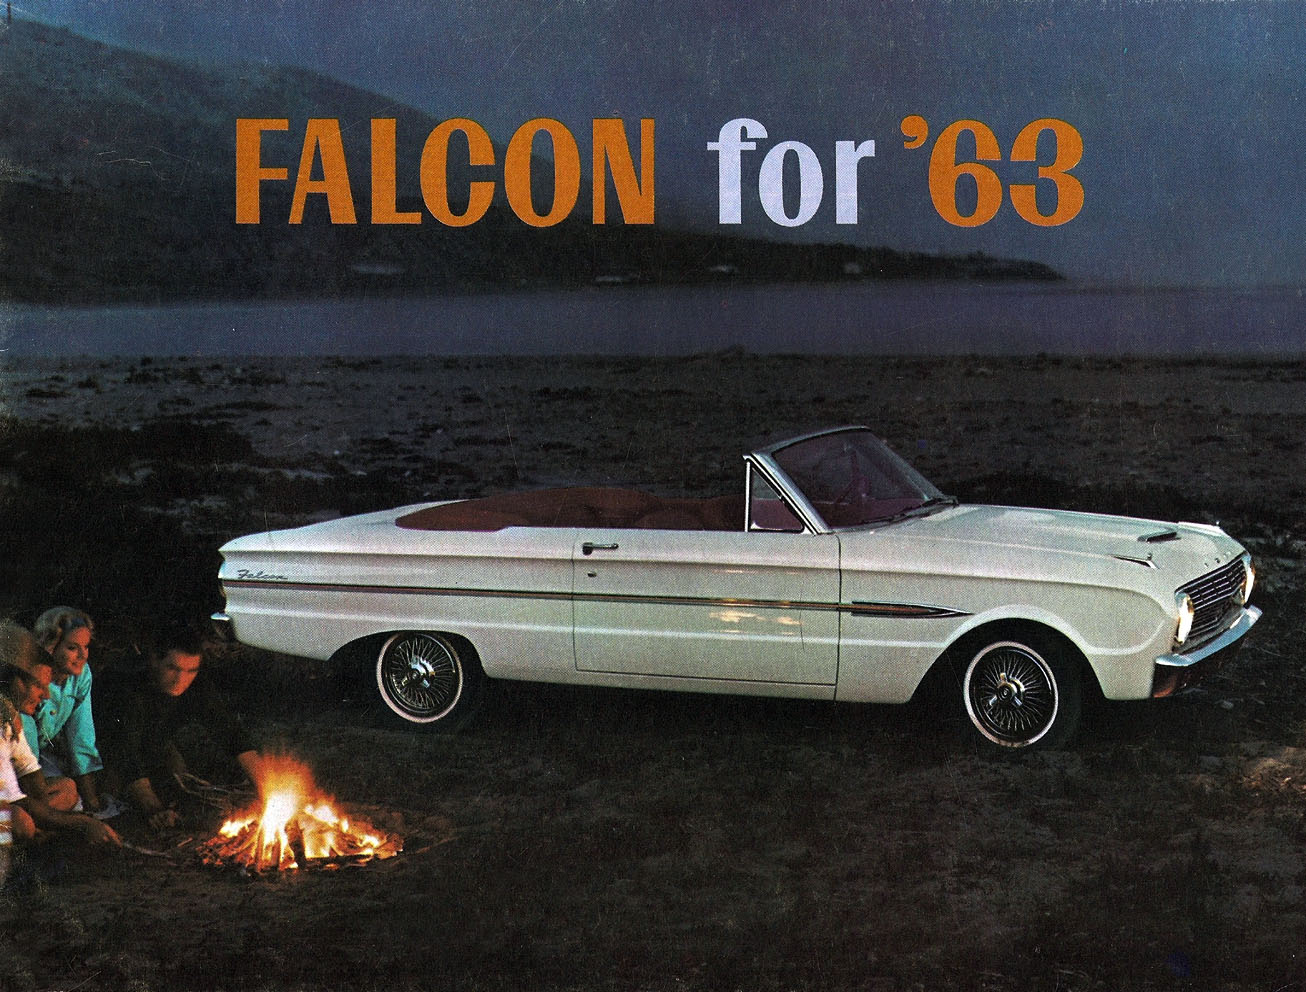 1963_Ford_Falcon-01